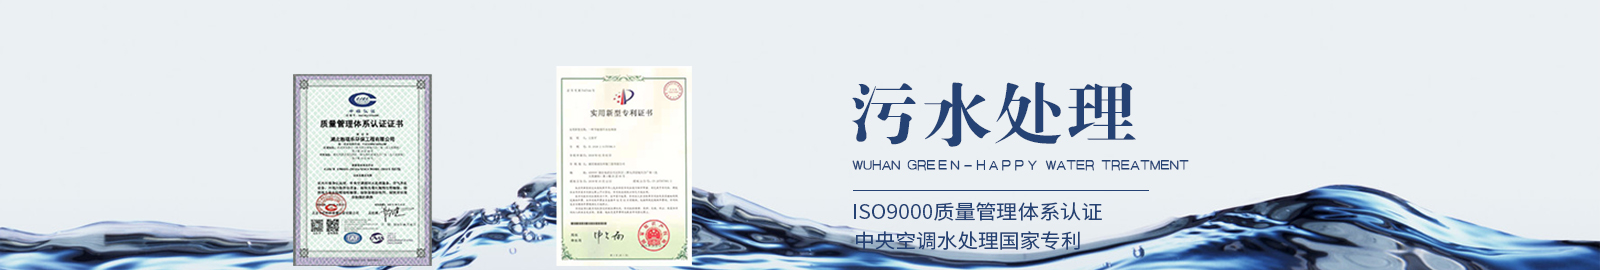 武汉水处理公司旗下业务之水污水处理图